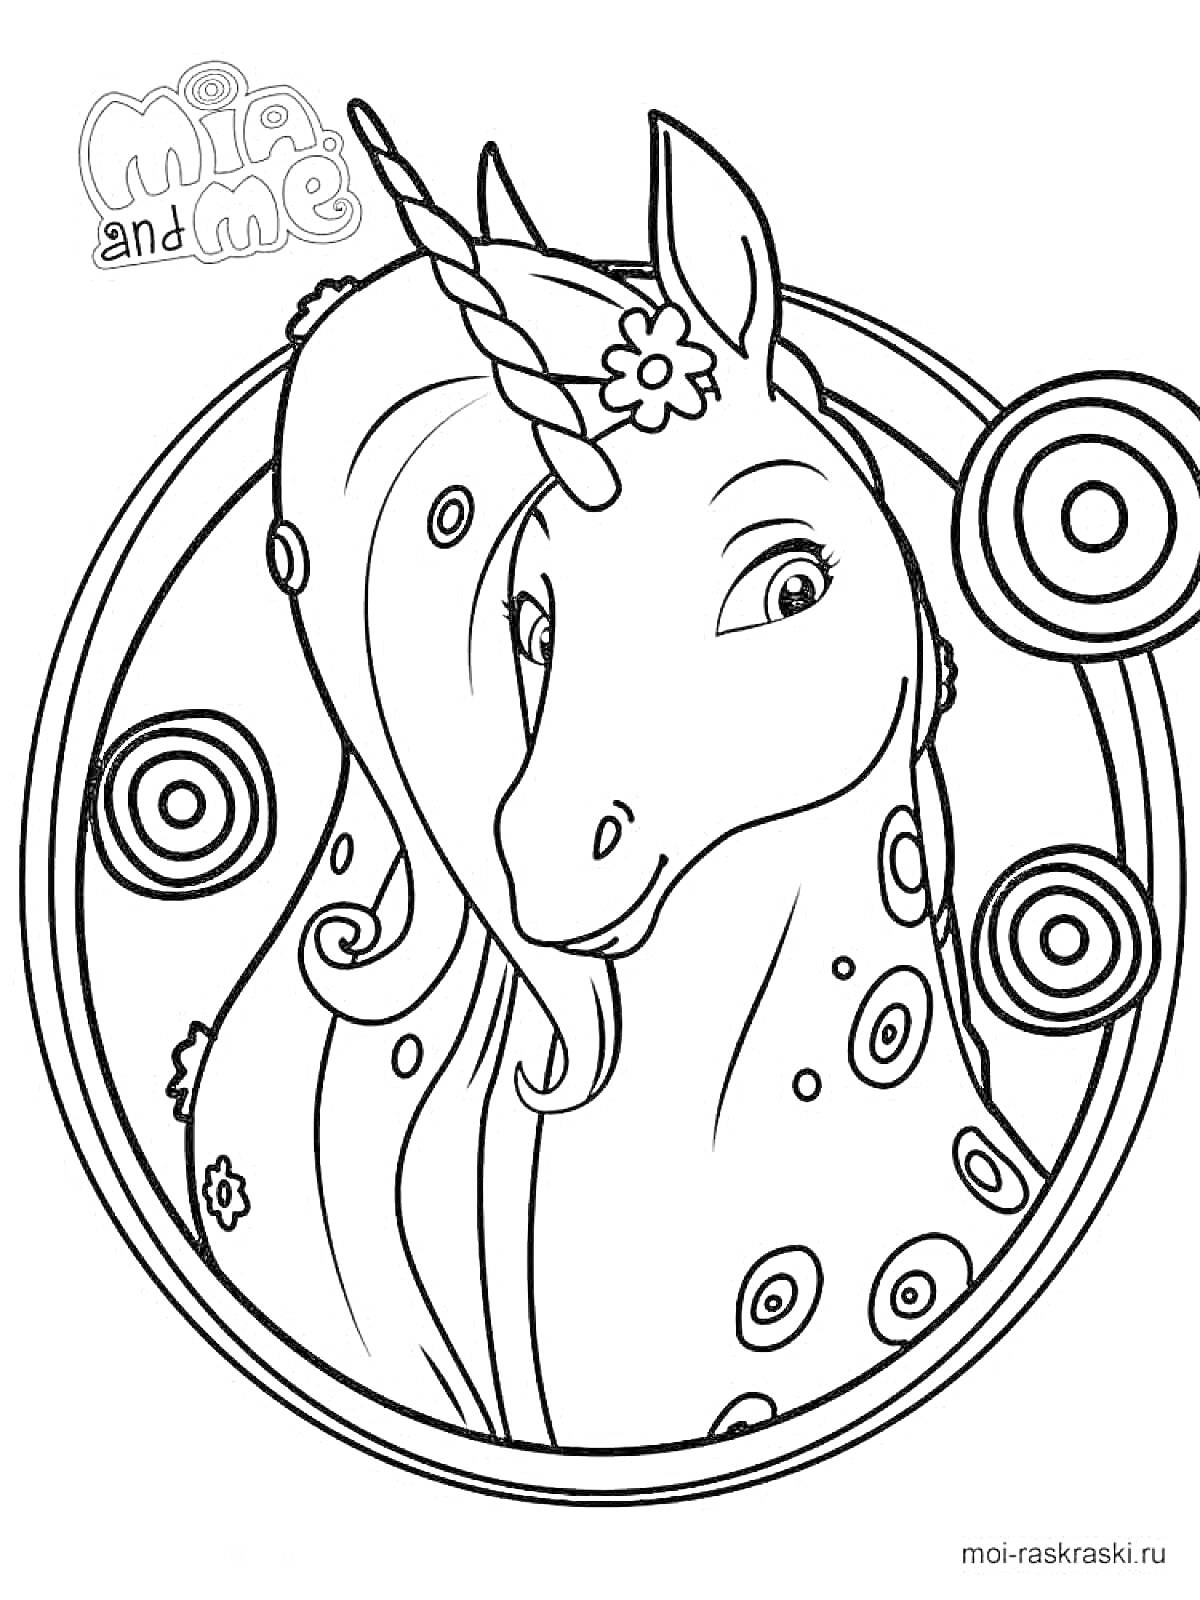 Раскраска Единорог с цветами и узорами (раскраска из серии 